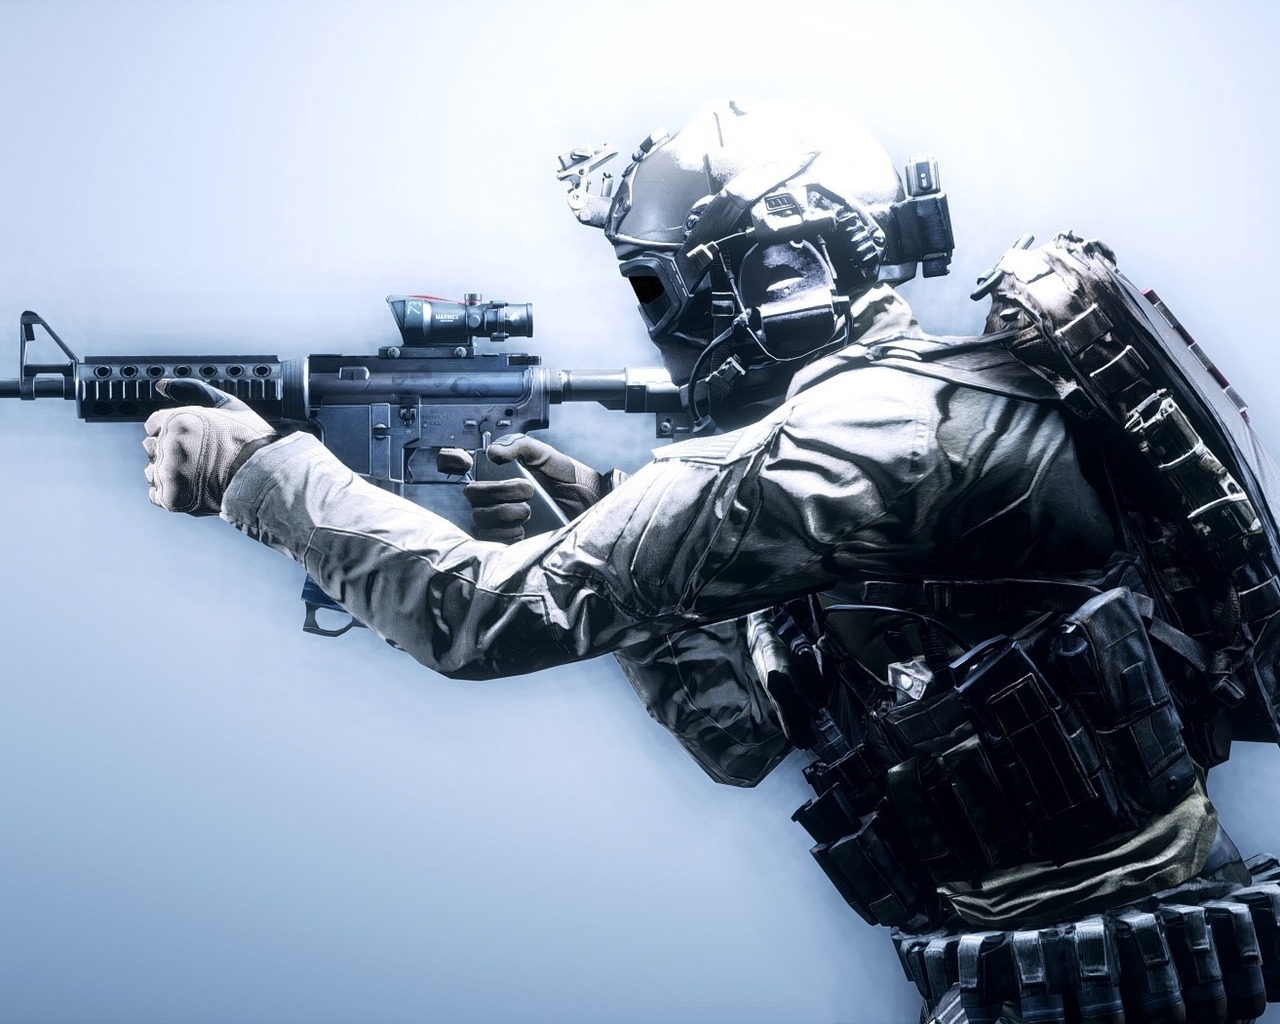 Battlefield 4 Soldier for 1280 x 1024 resolution